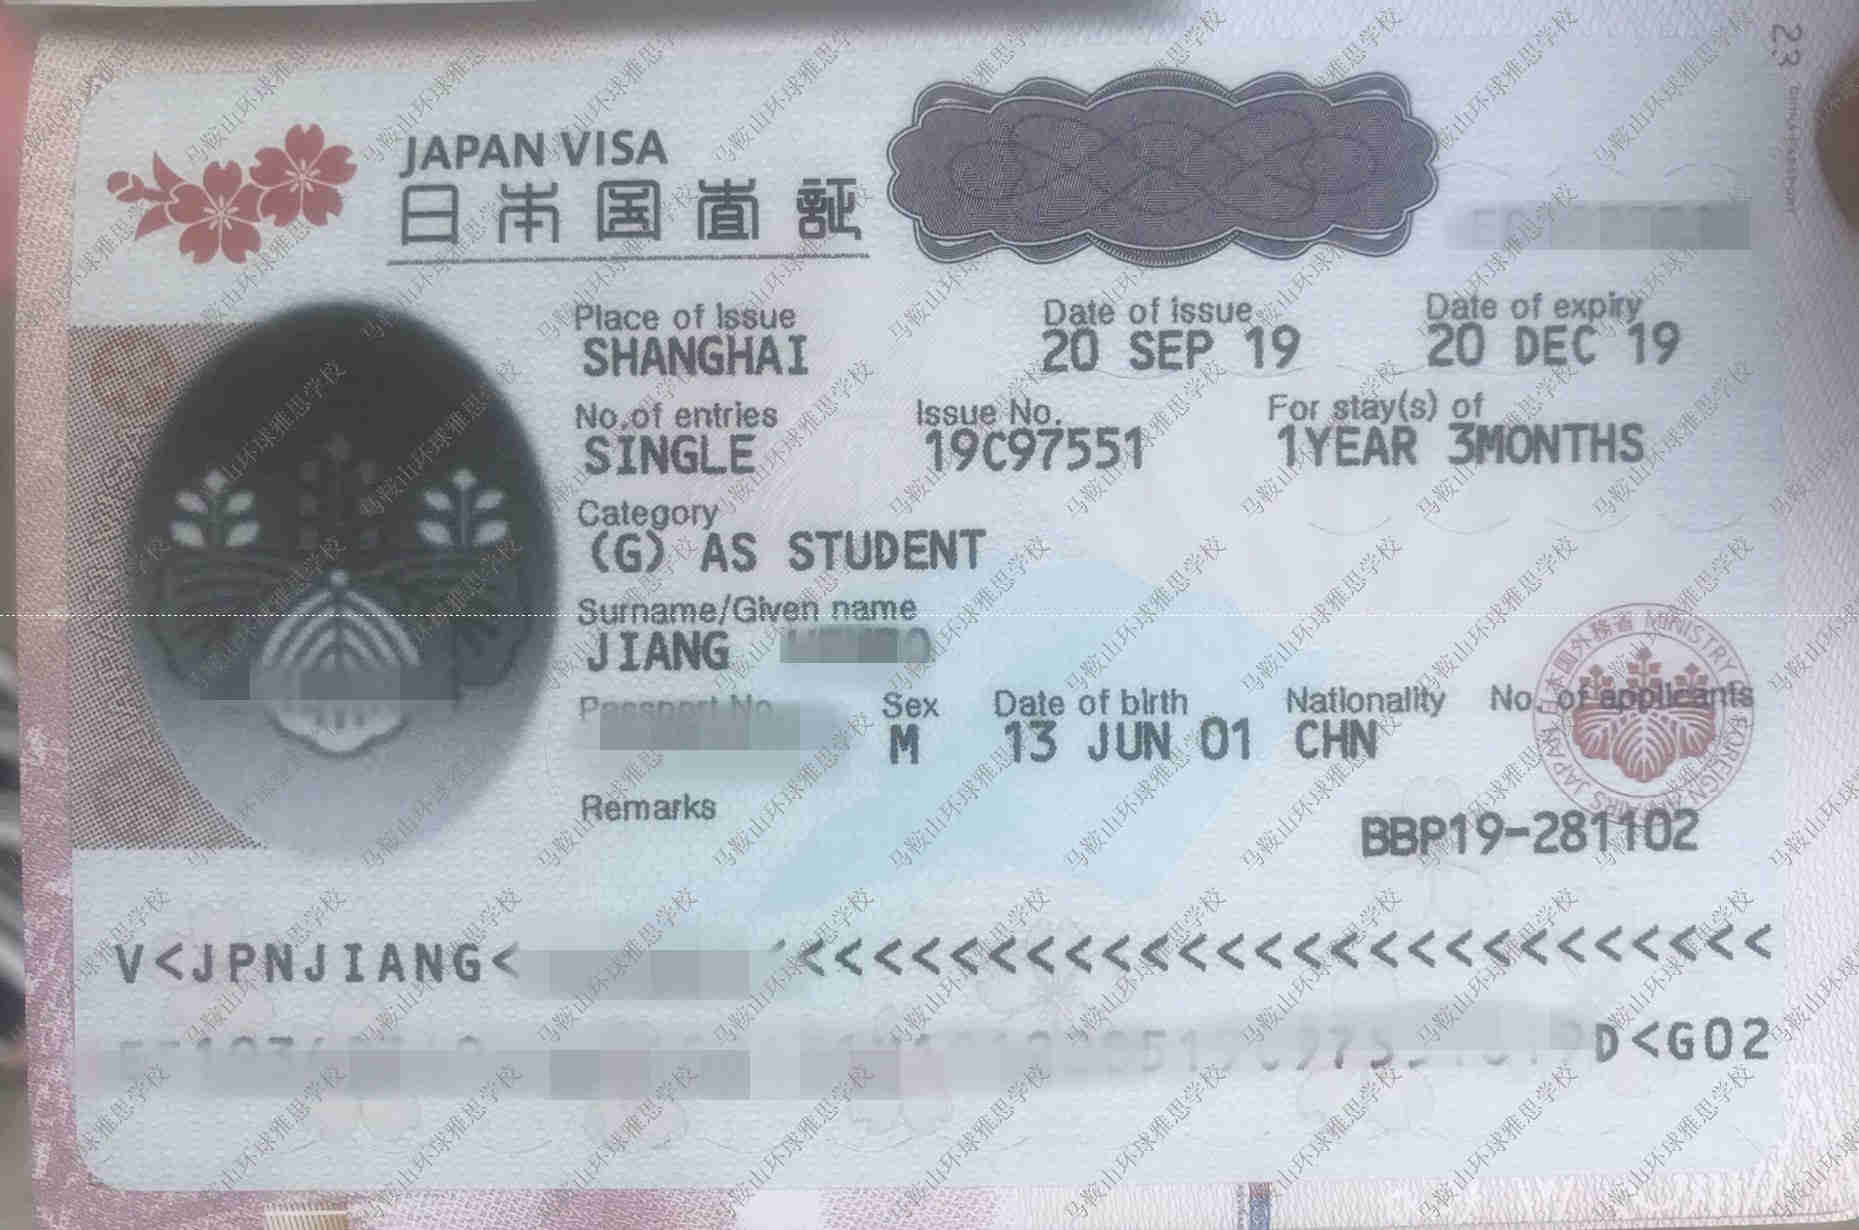 姜同学获得日本留学签证